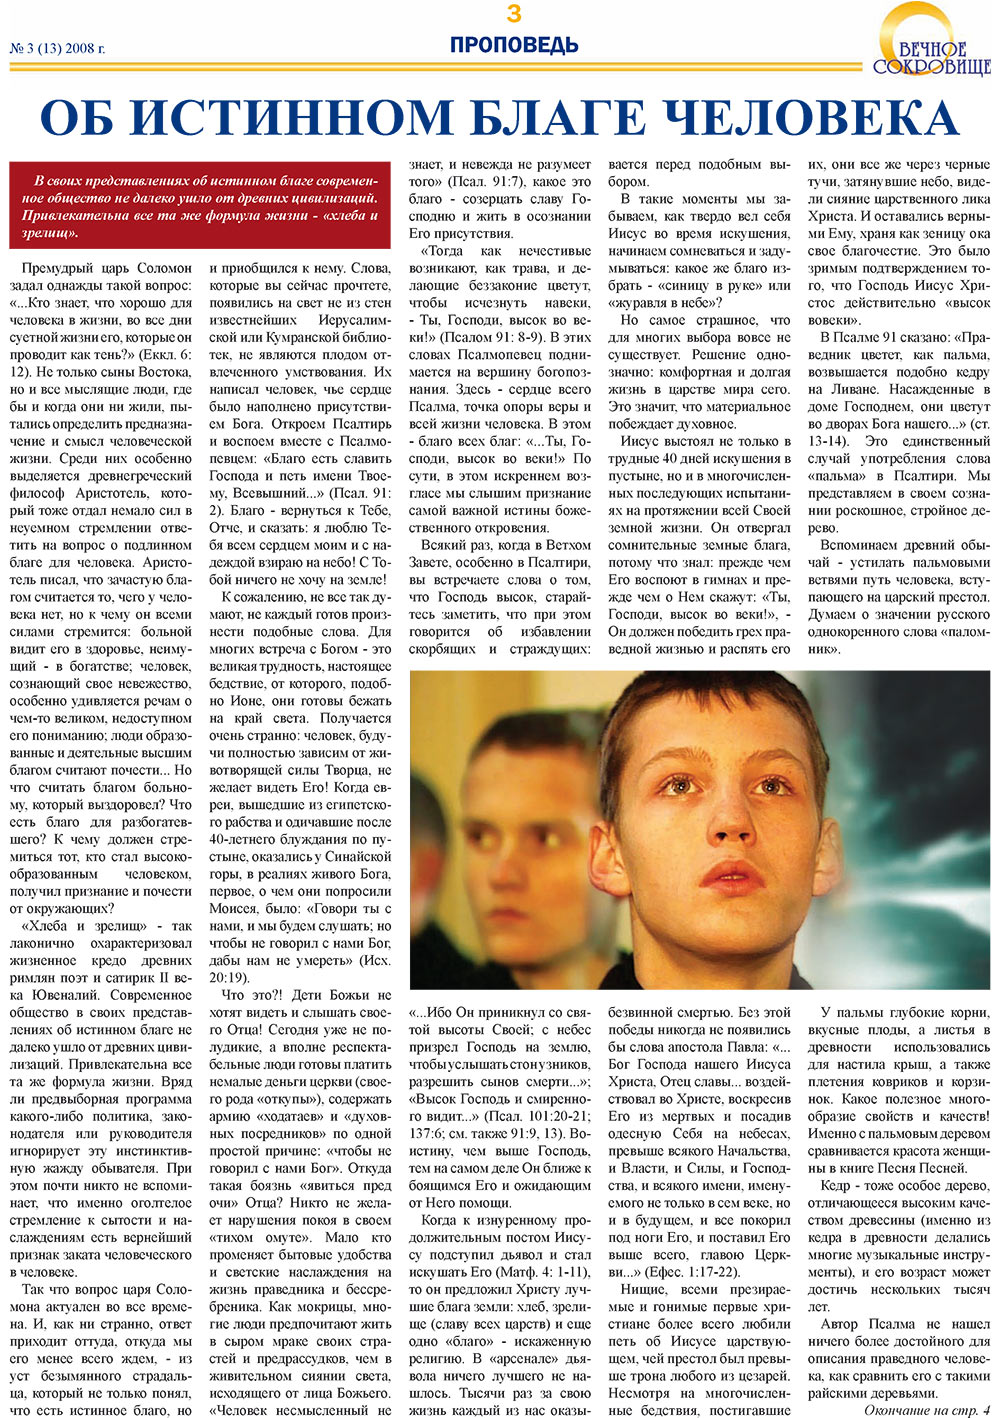 Вечное сокровище (газета). 2008 год, номер 3, стр. 3